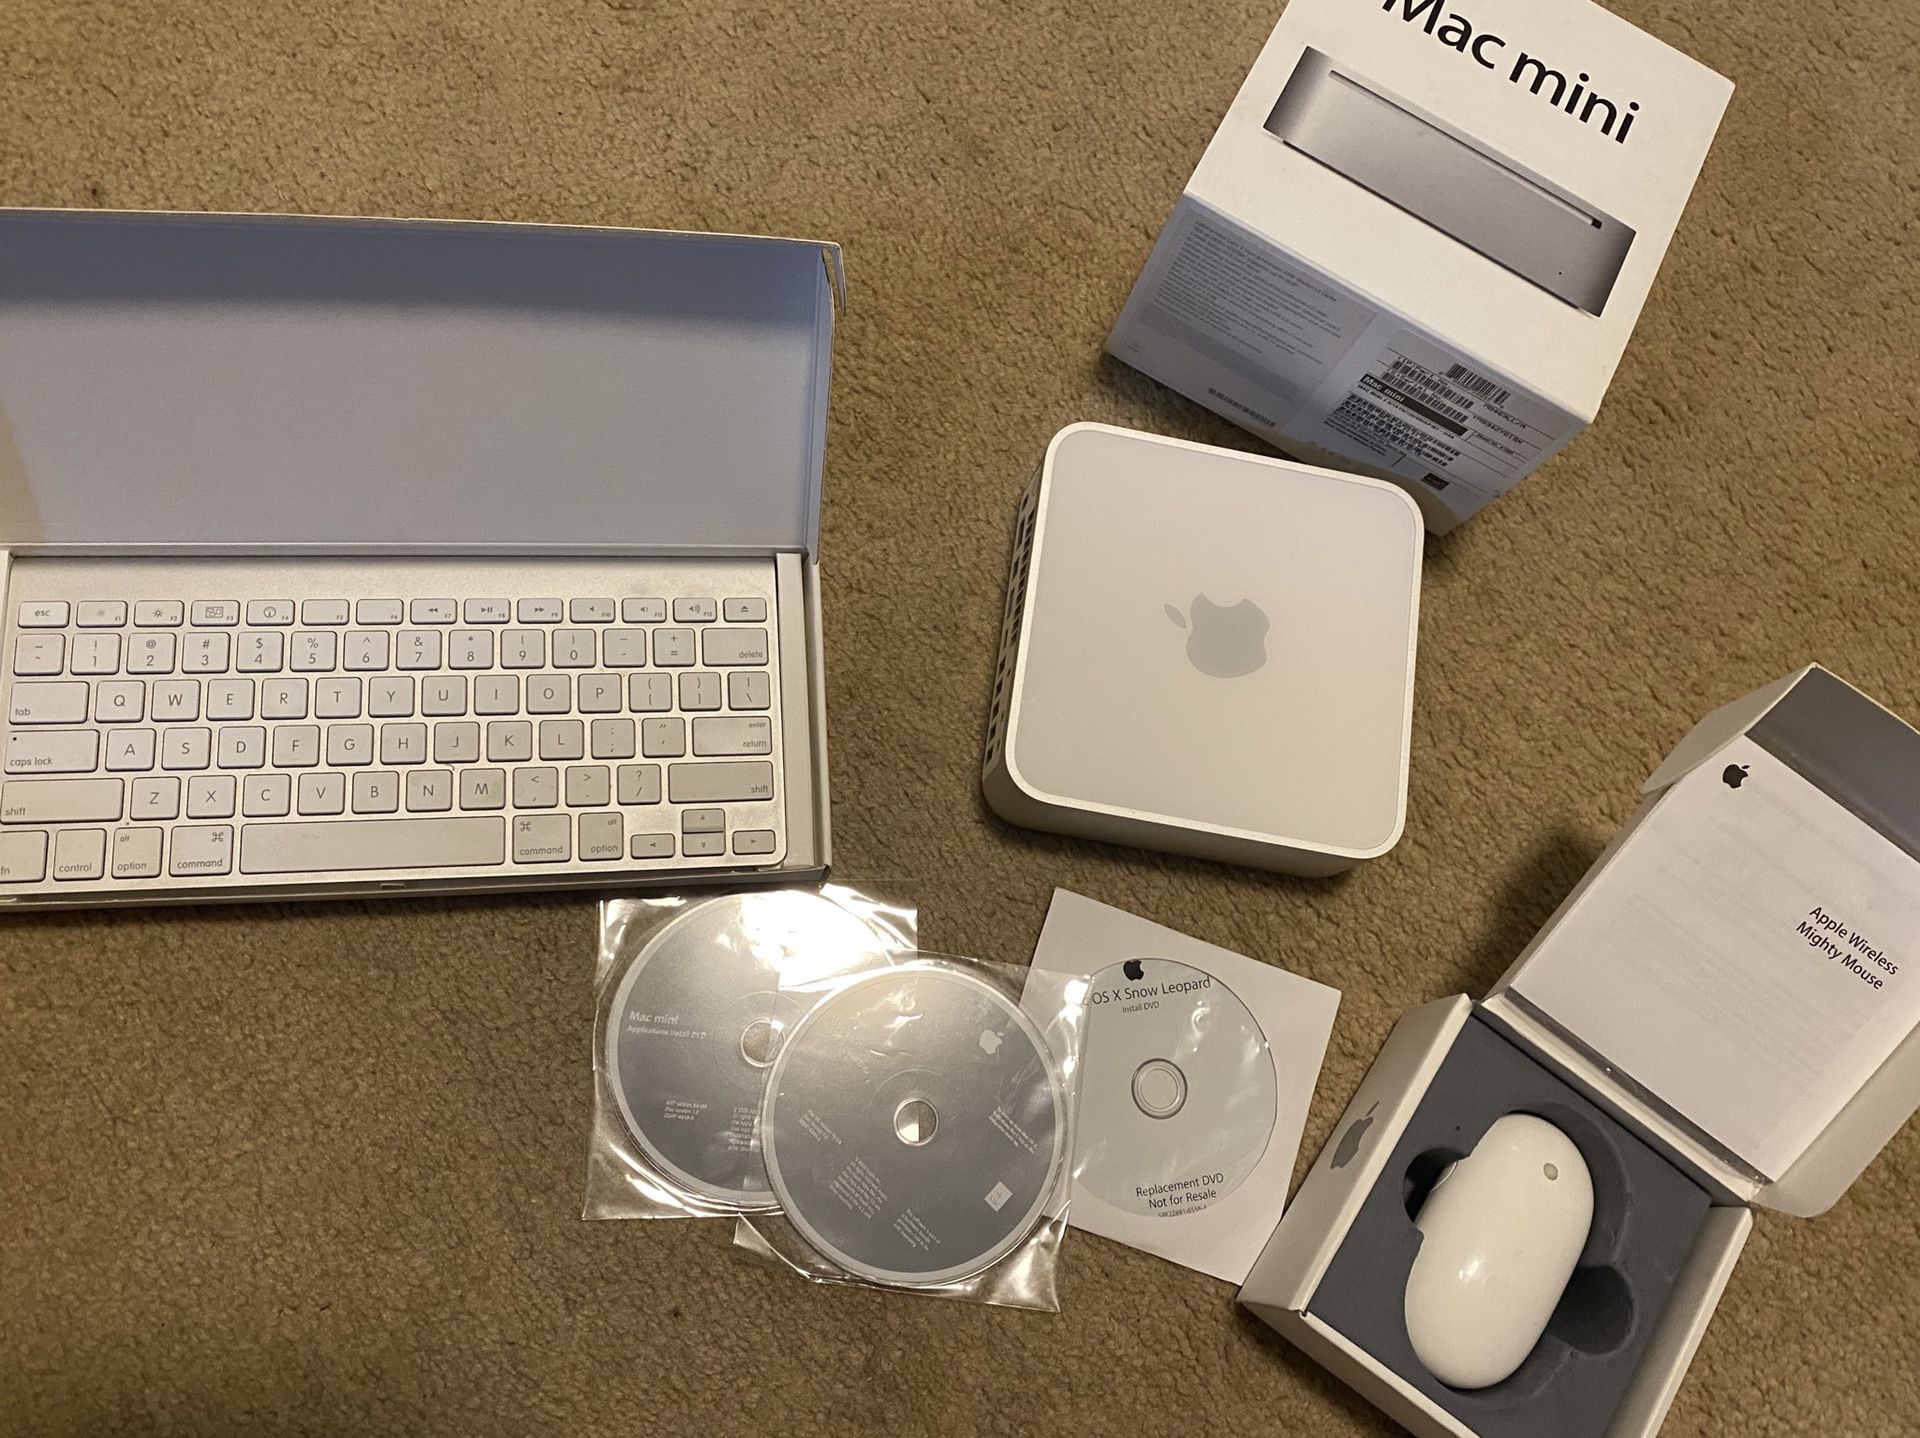 Apple Mac Mini + wireless Mighty Mouse + wireless Apple keyboard